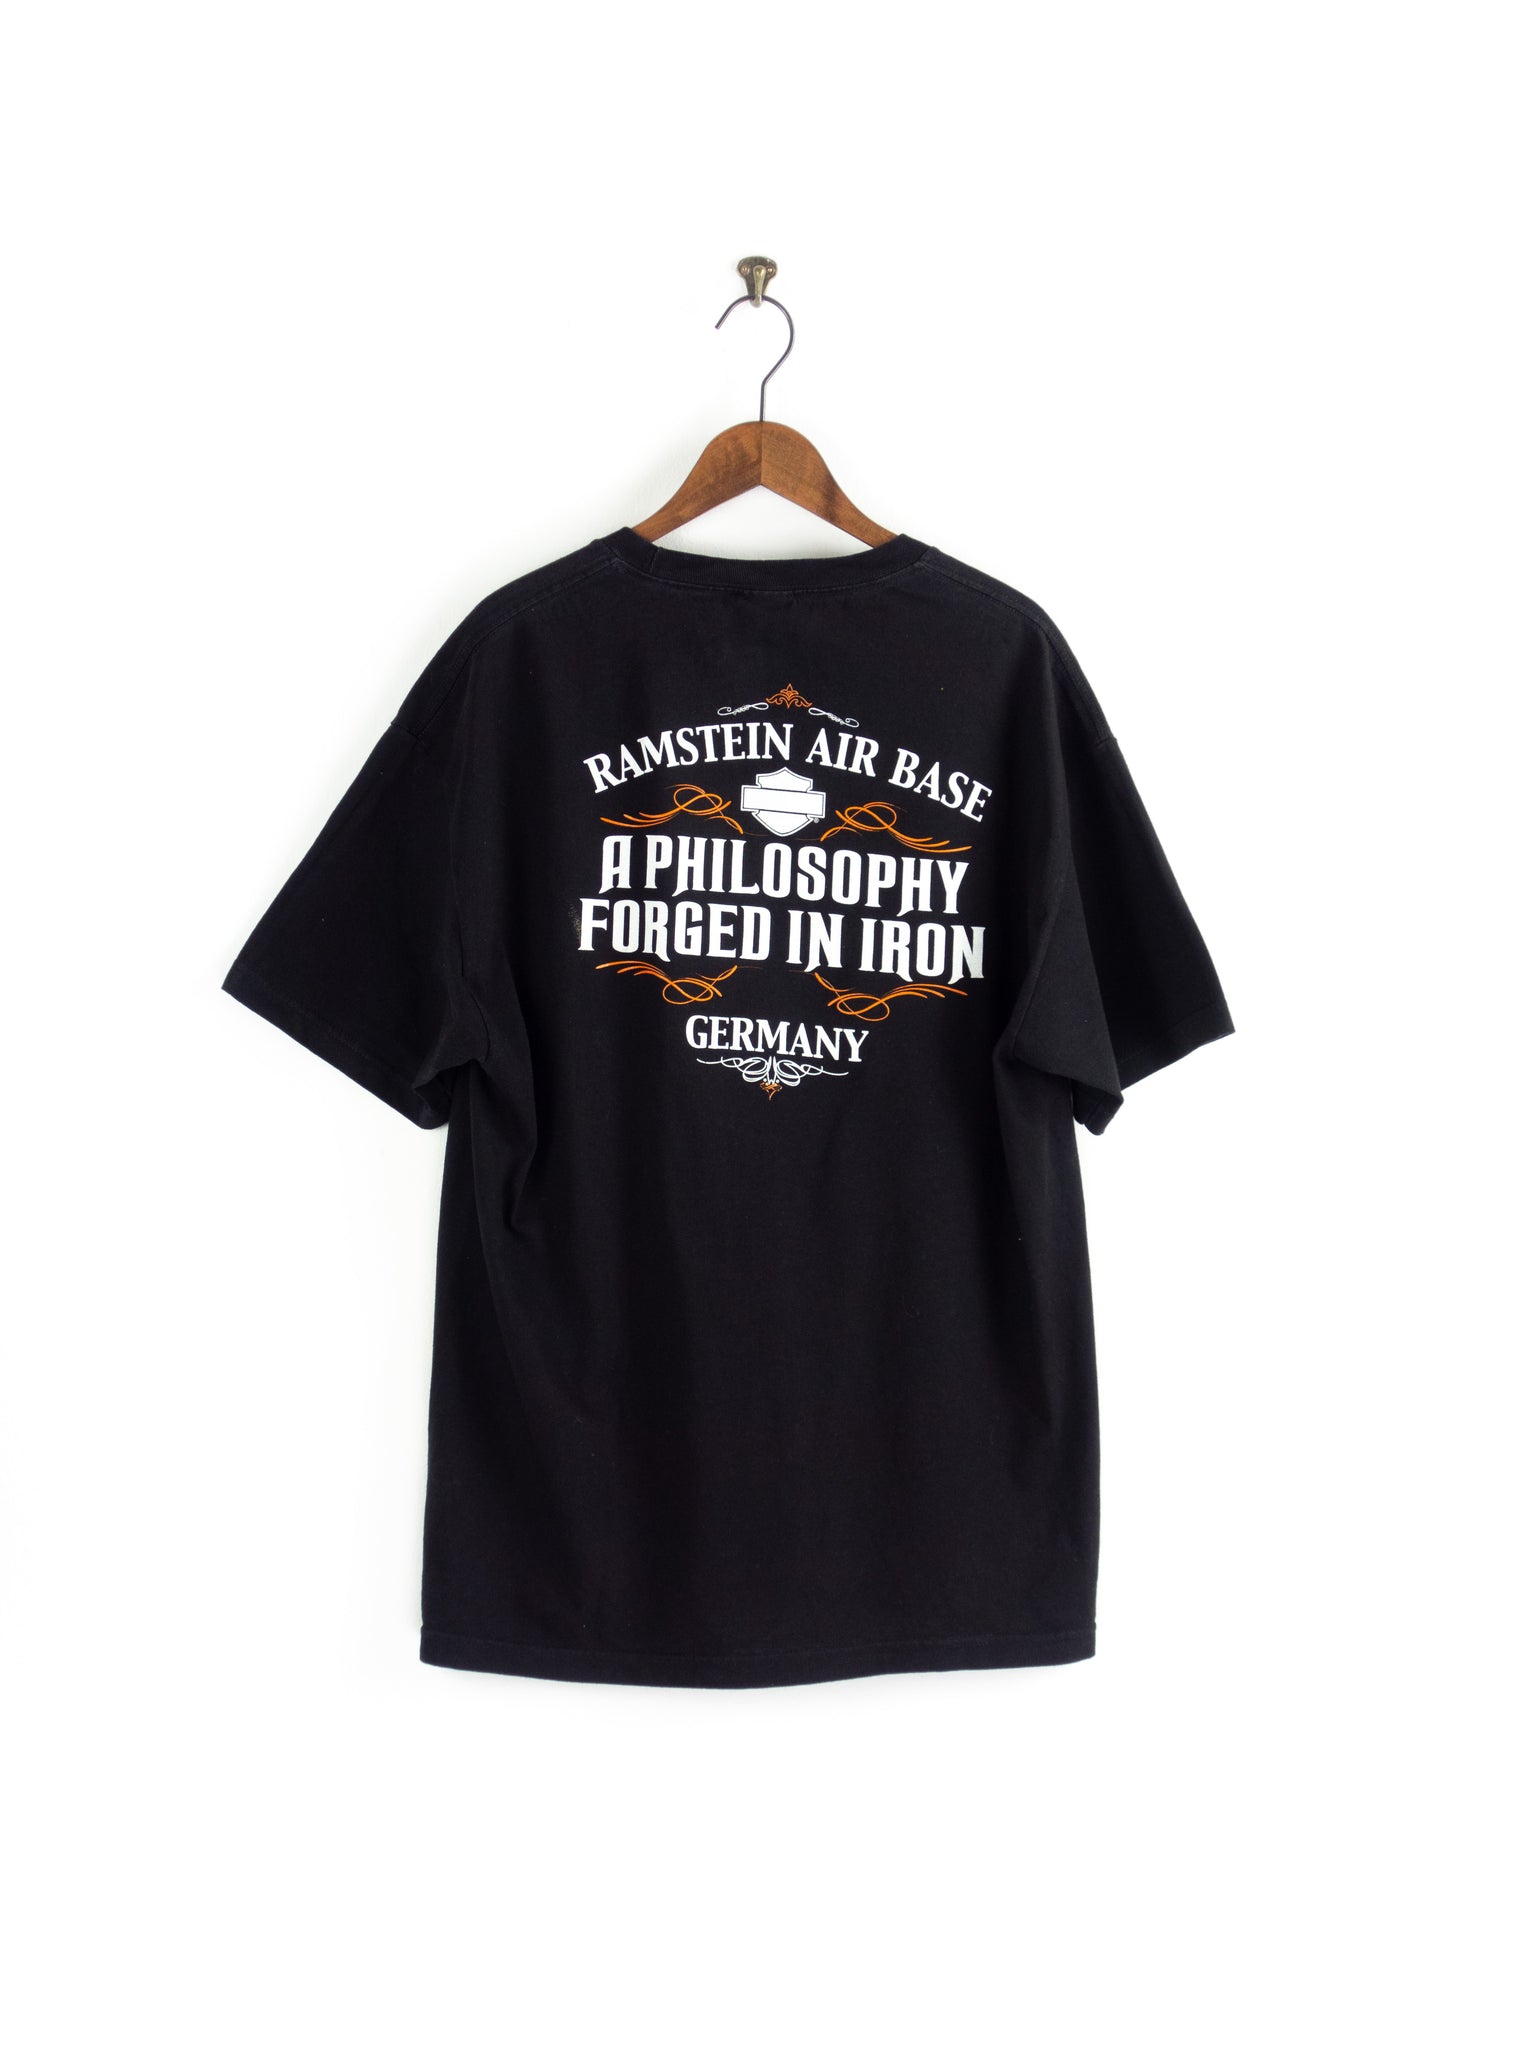 Harley-Davidson Grafik-T-Shirt XL